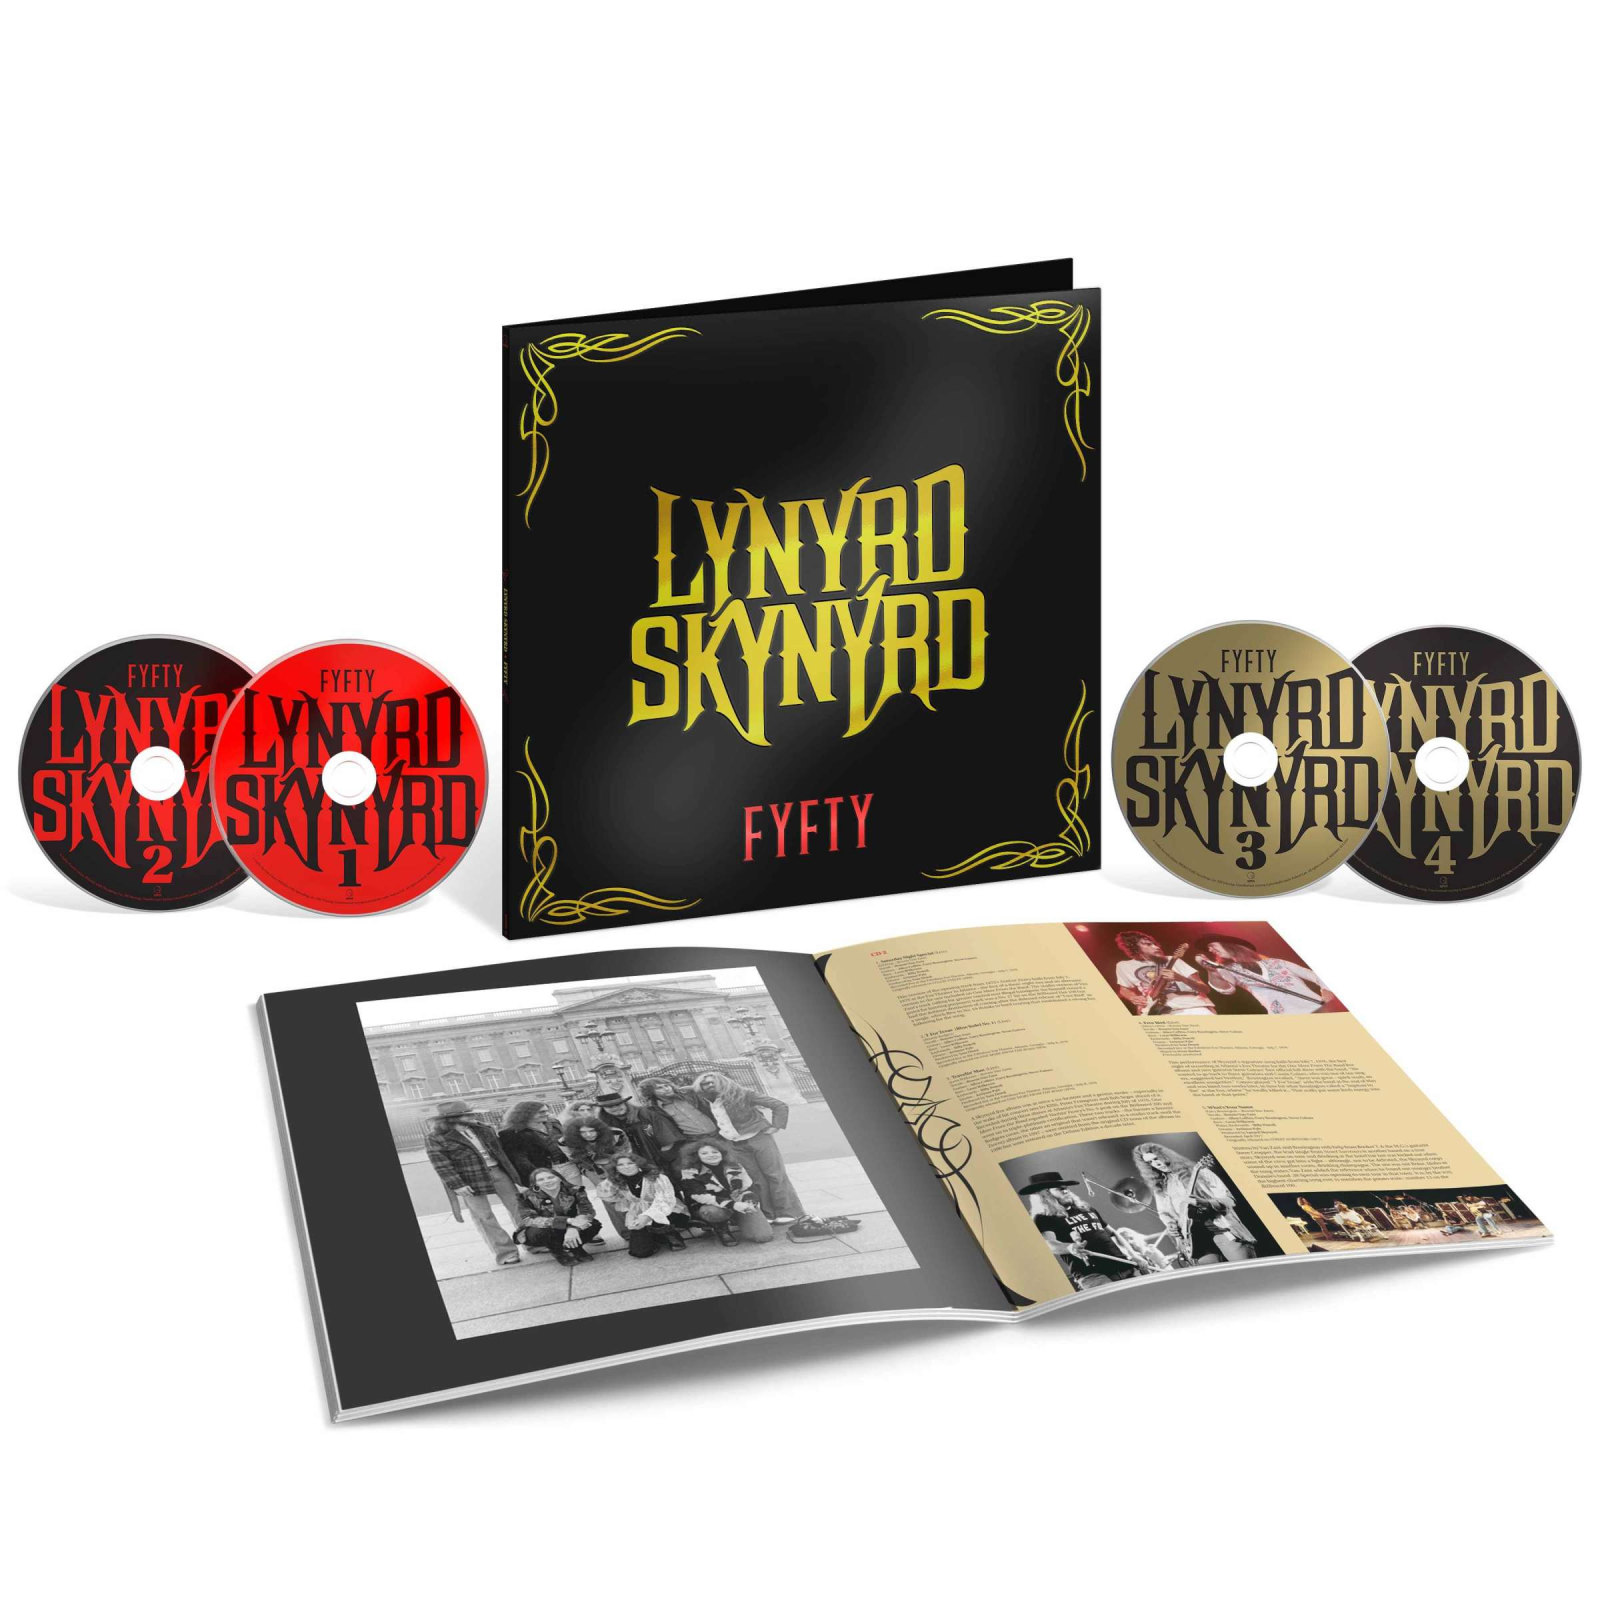 LYNYRD SKYNYRD - FIFTY 50° Anniversary Box-set - Limited Edition